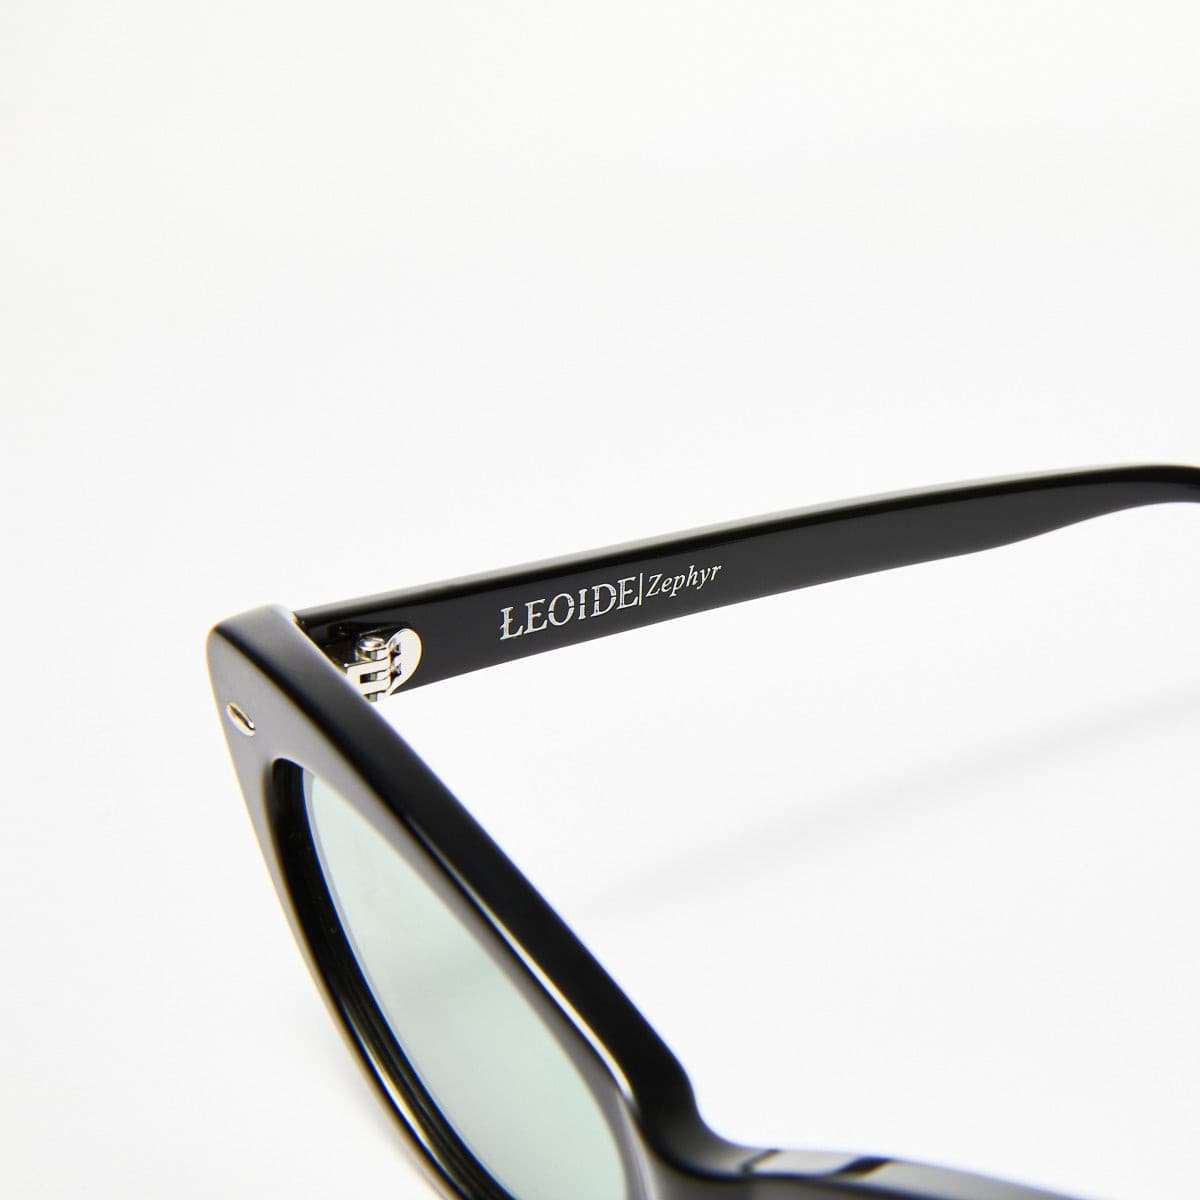 ZEPHYR - Black Polished Frames / Green Lens ŁEOIDE